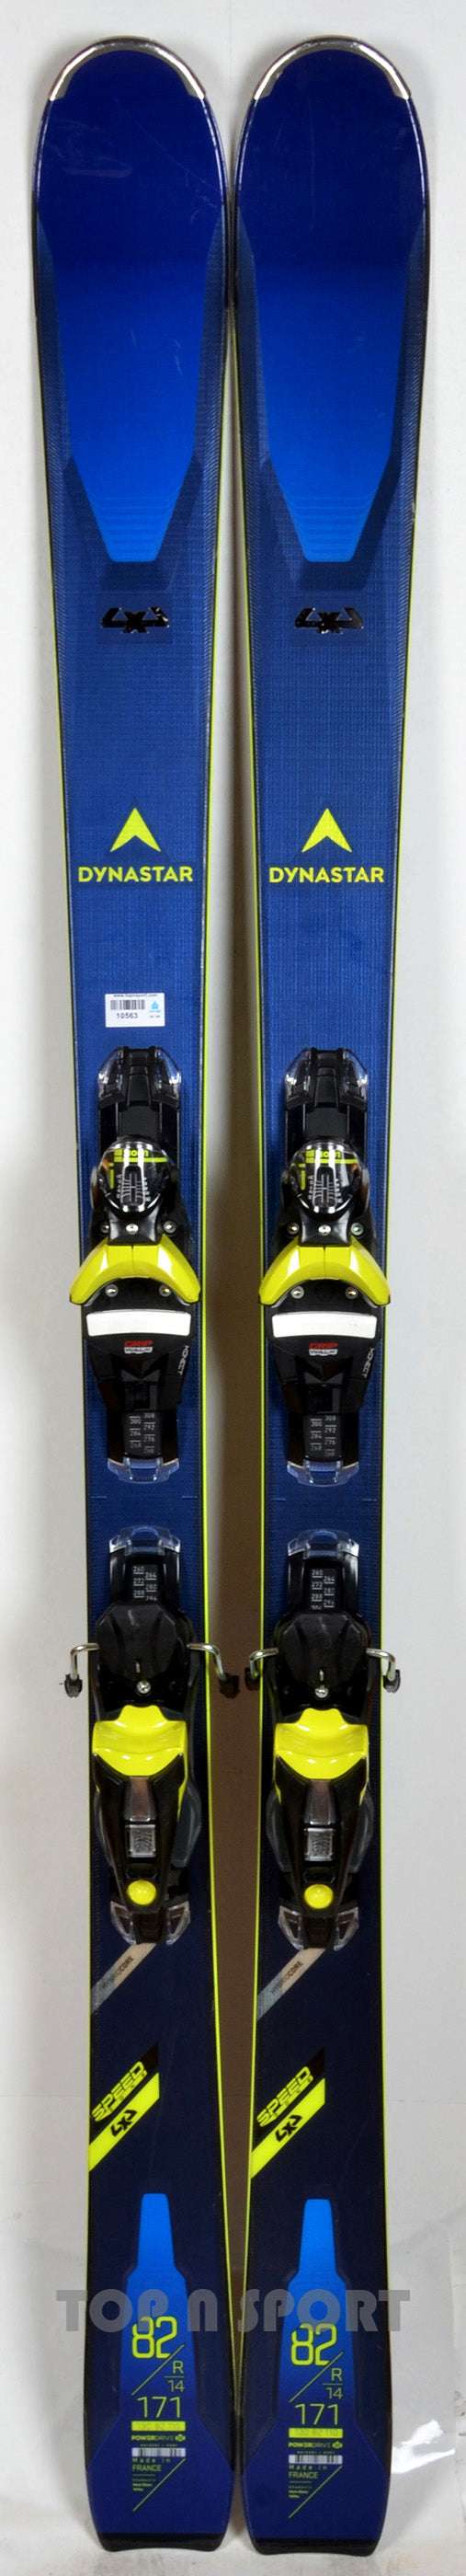 Dynastar SPEEDZONE 4x4 82 - TEST 2021 - skis d'occasion